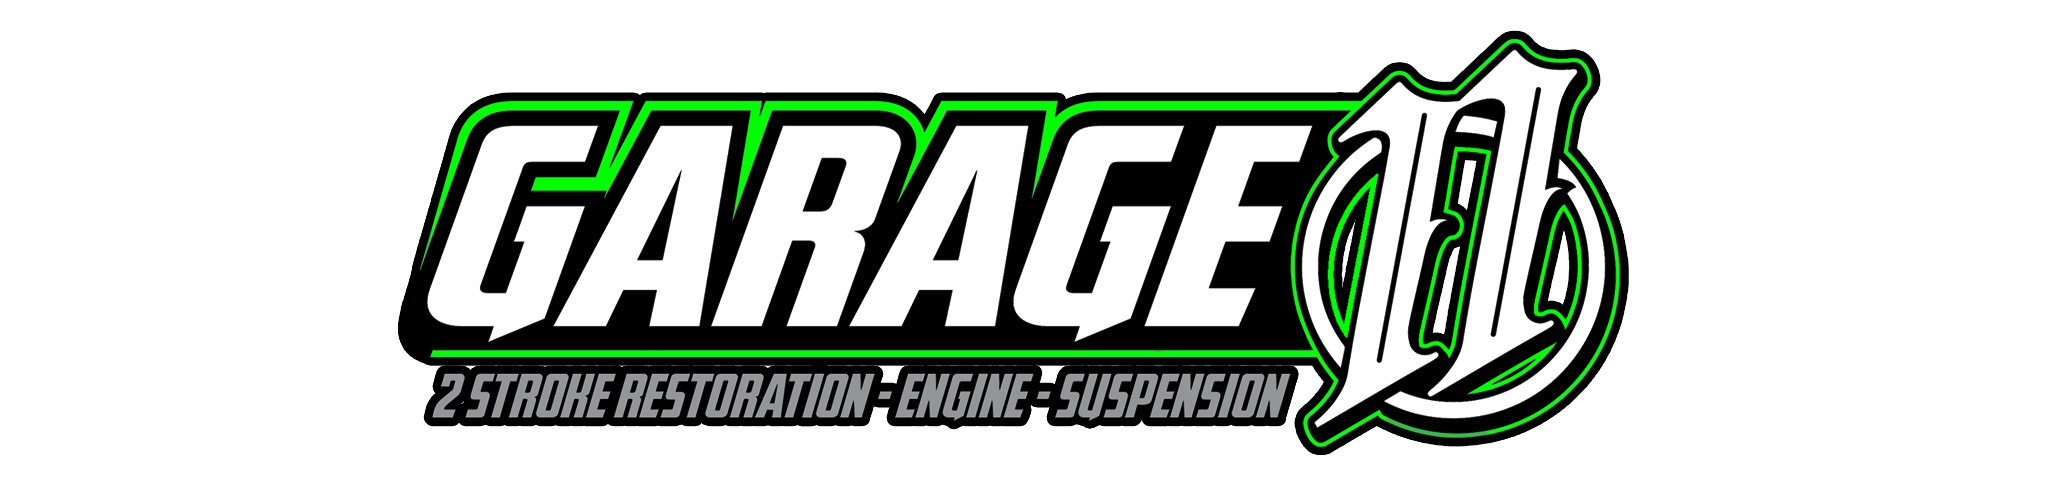 Garage Eleven logo